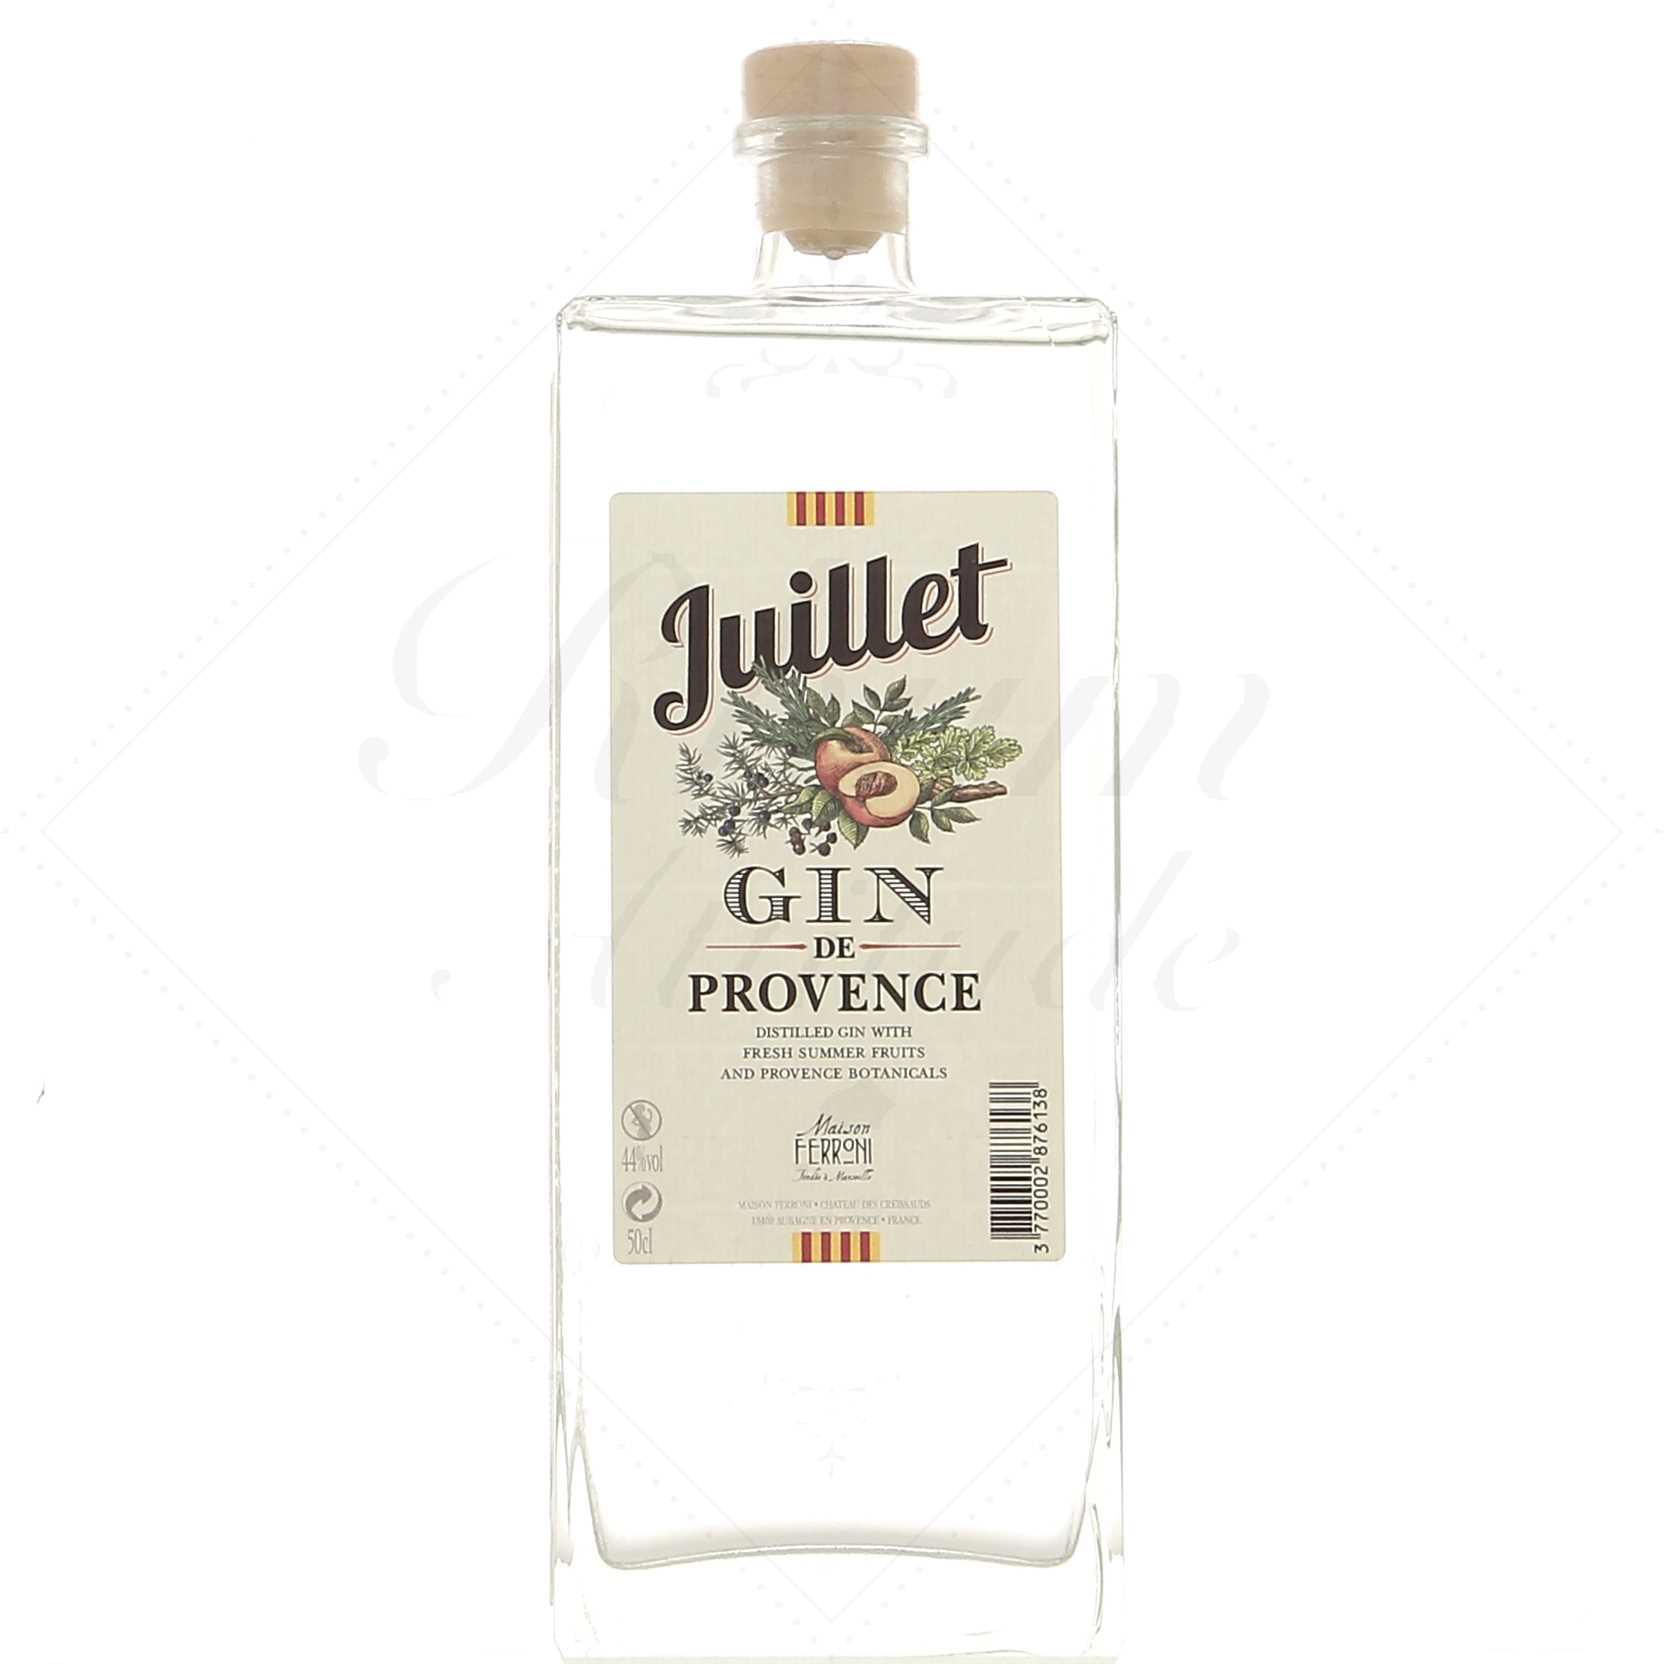 Coffret gamme série Gin Juillet - Gin de Provence - Maison Ferroni